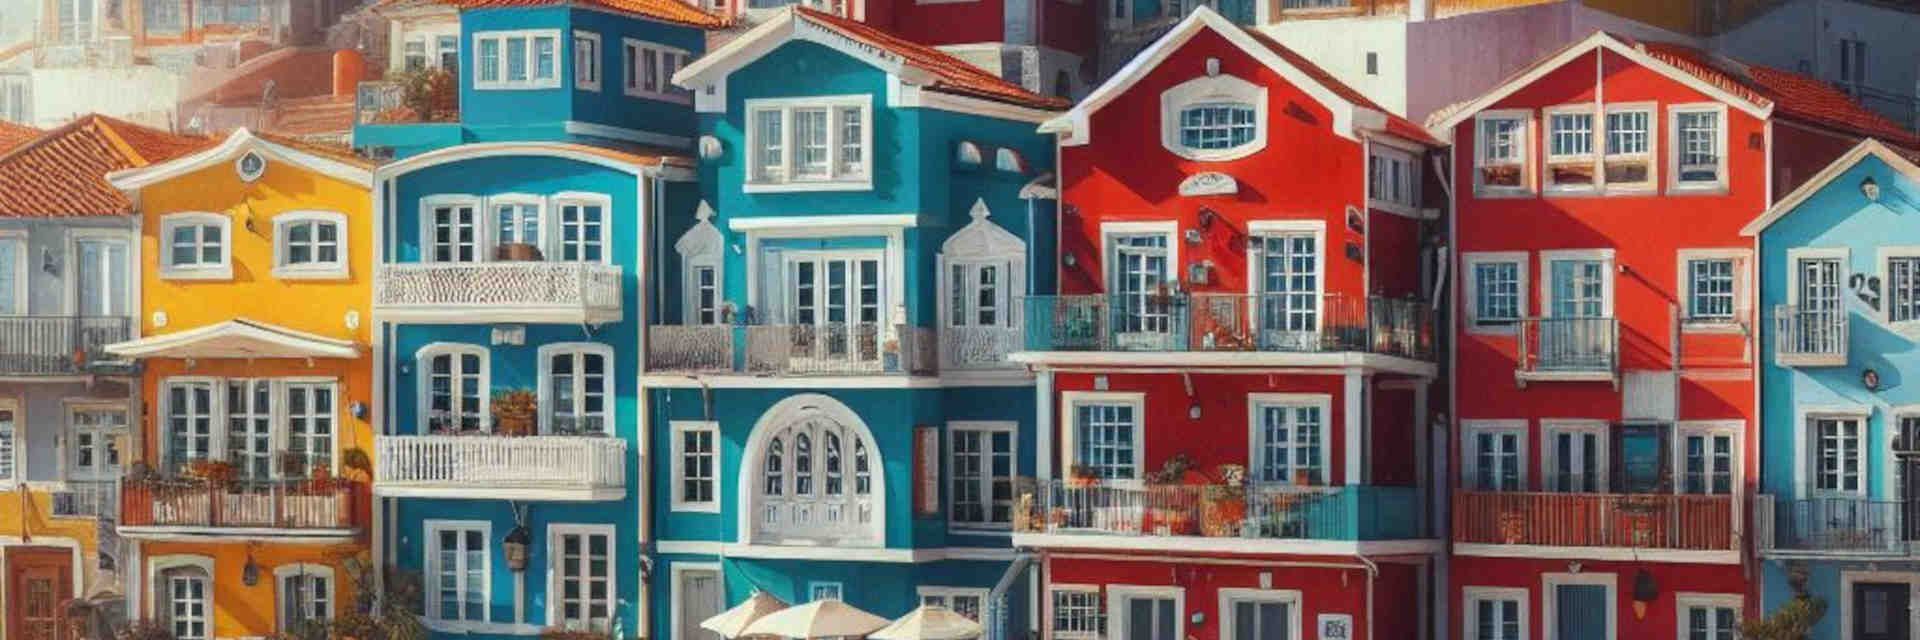 Casas coloridas em Portugal